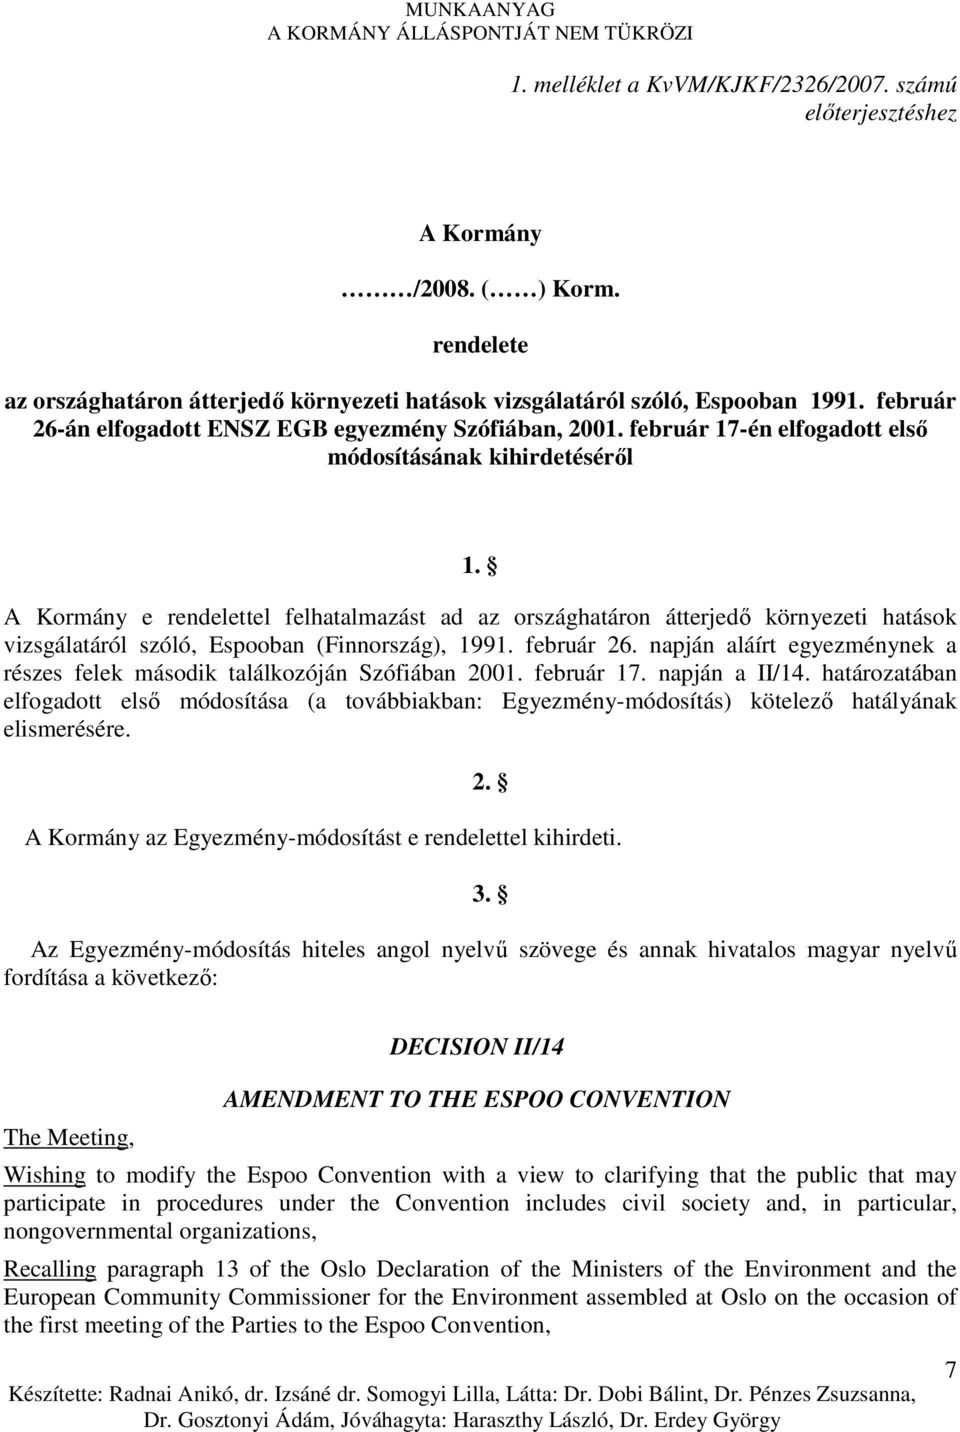 A Kormány e rendelettel felhatalmazást ad az országhatáron átterjedı környezeti hatások vizsgálatáról szóló, Espooban (Finnország), 1991. február 26.